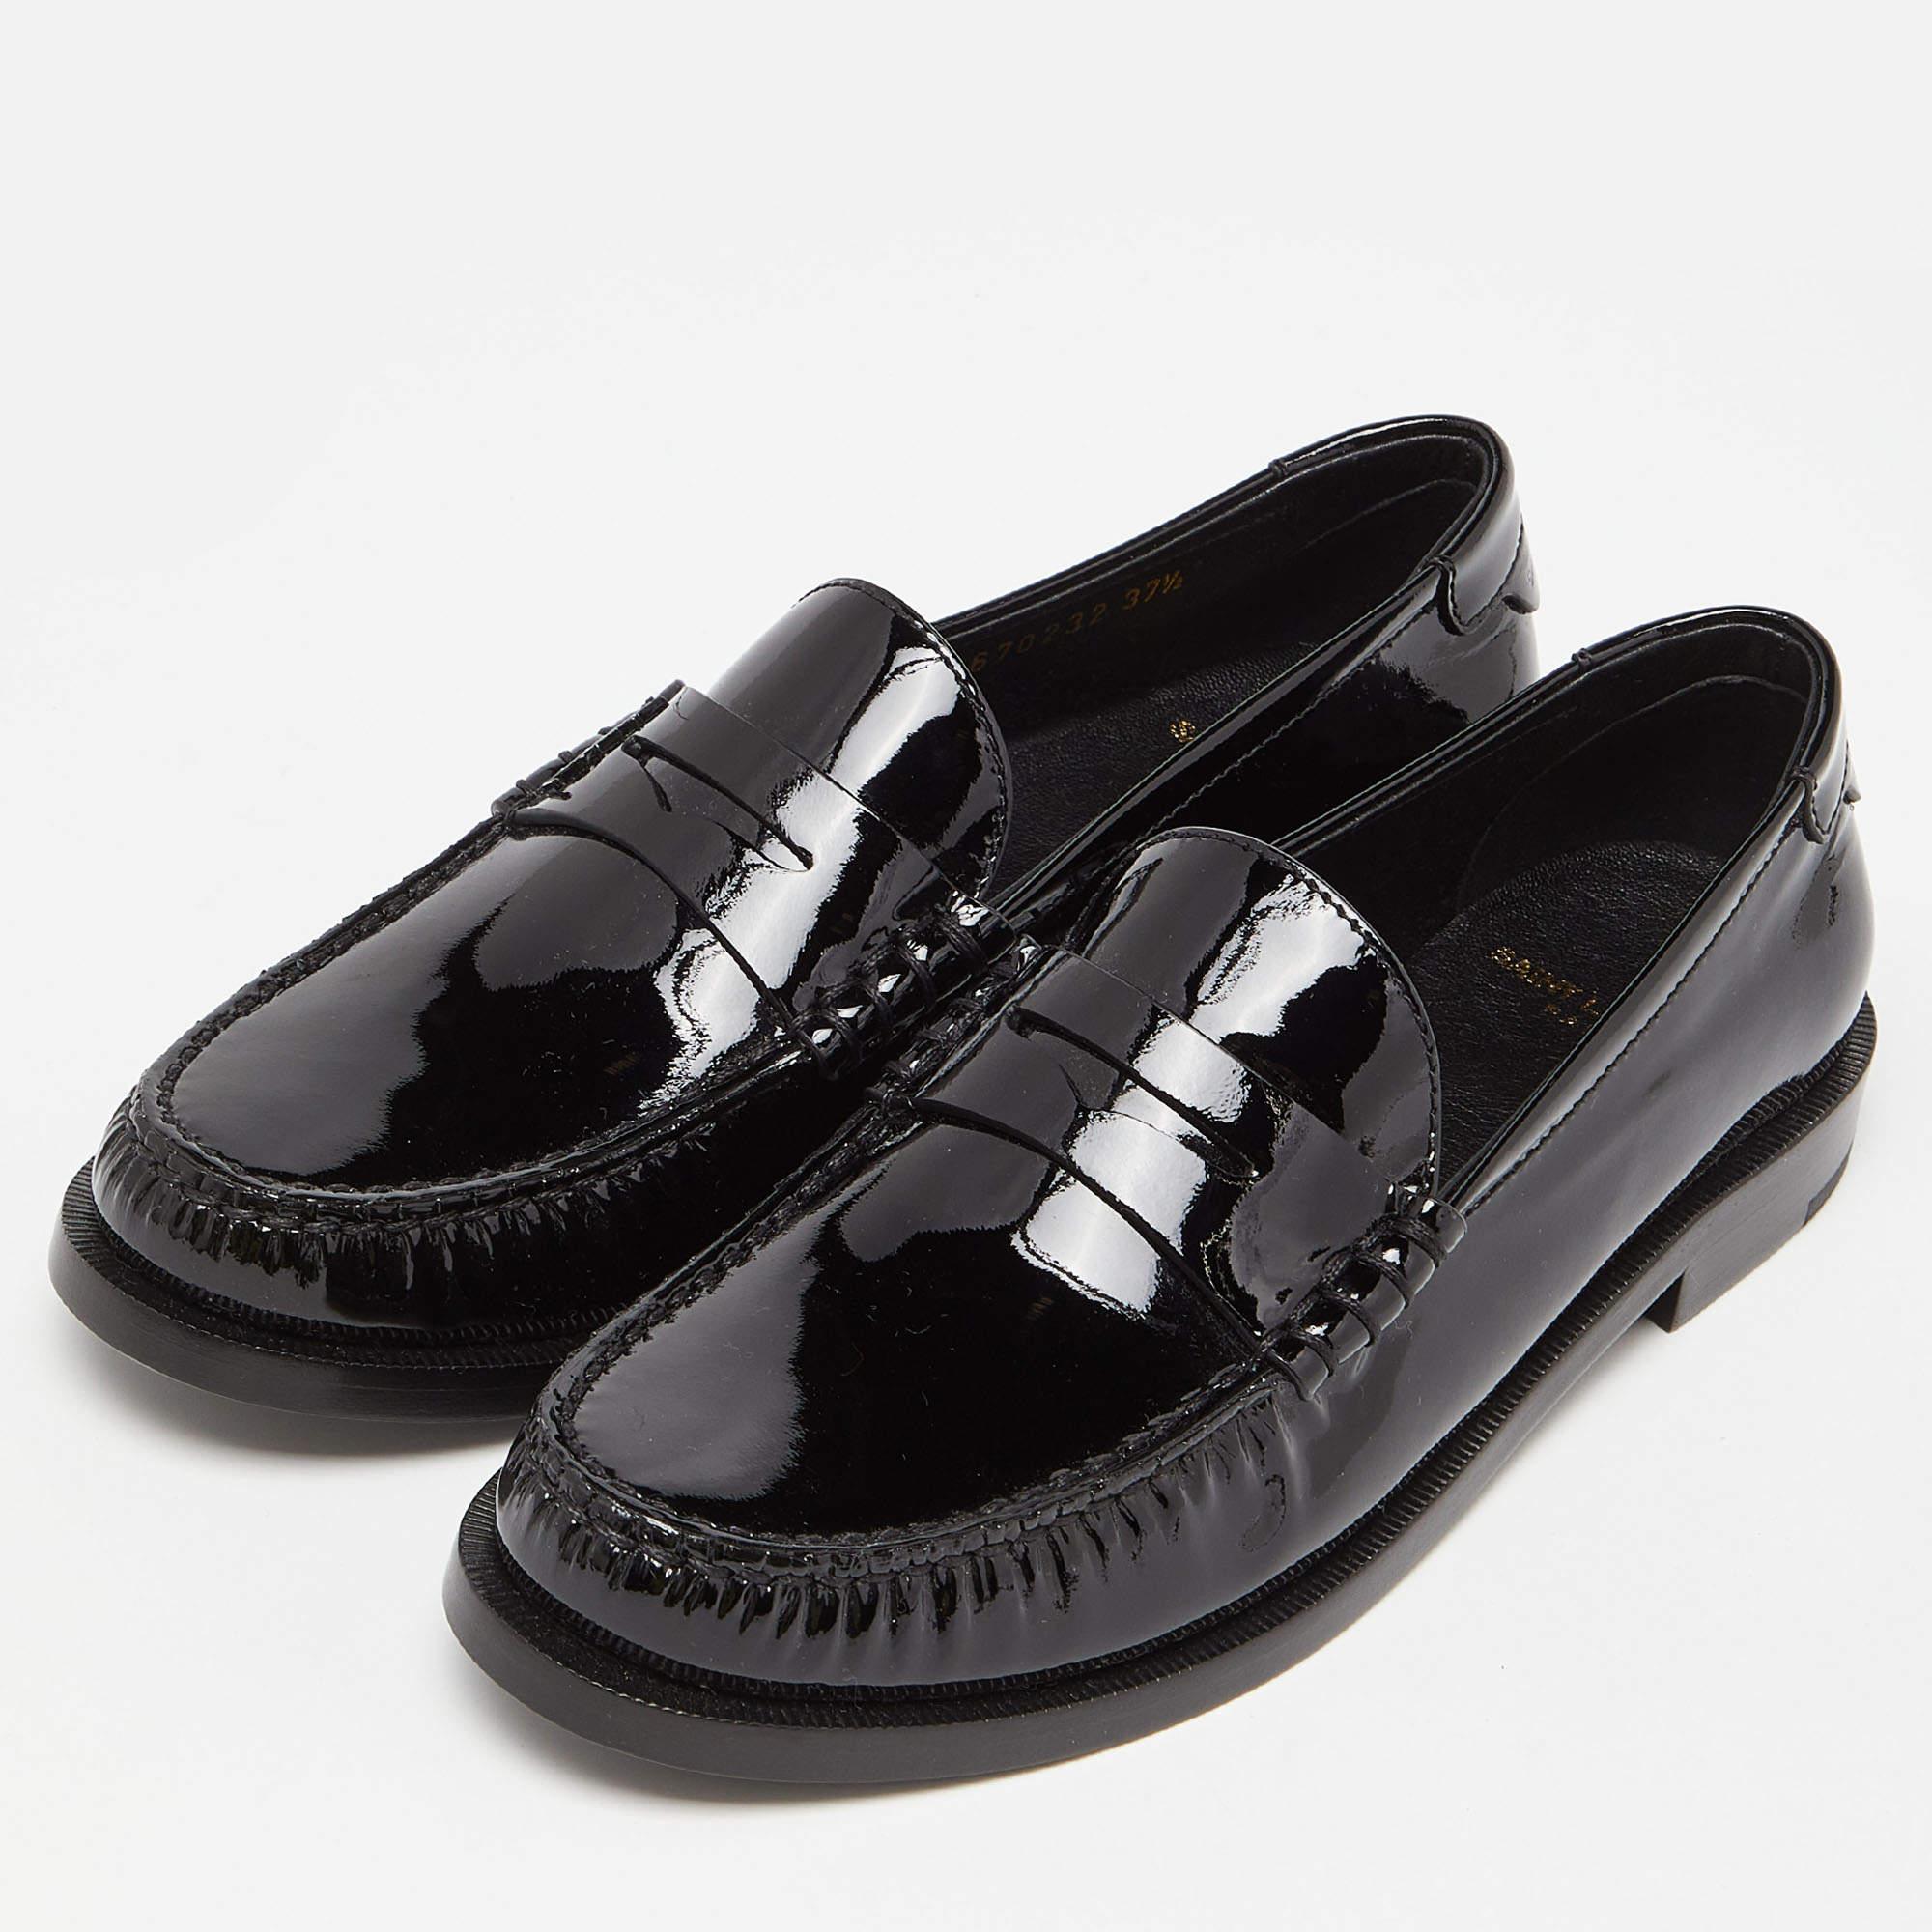 Saint Laurent Black Patent Leather Penny Le Loafers Size 37.5 1